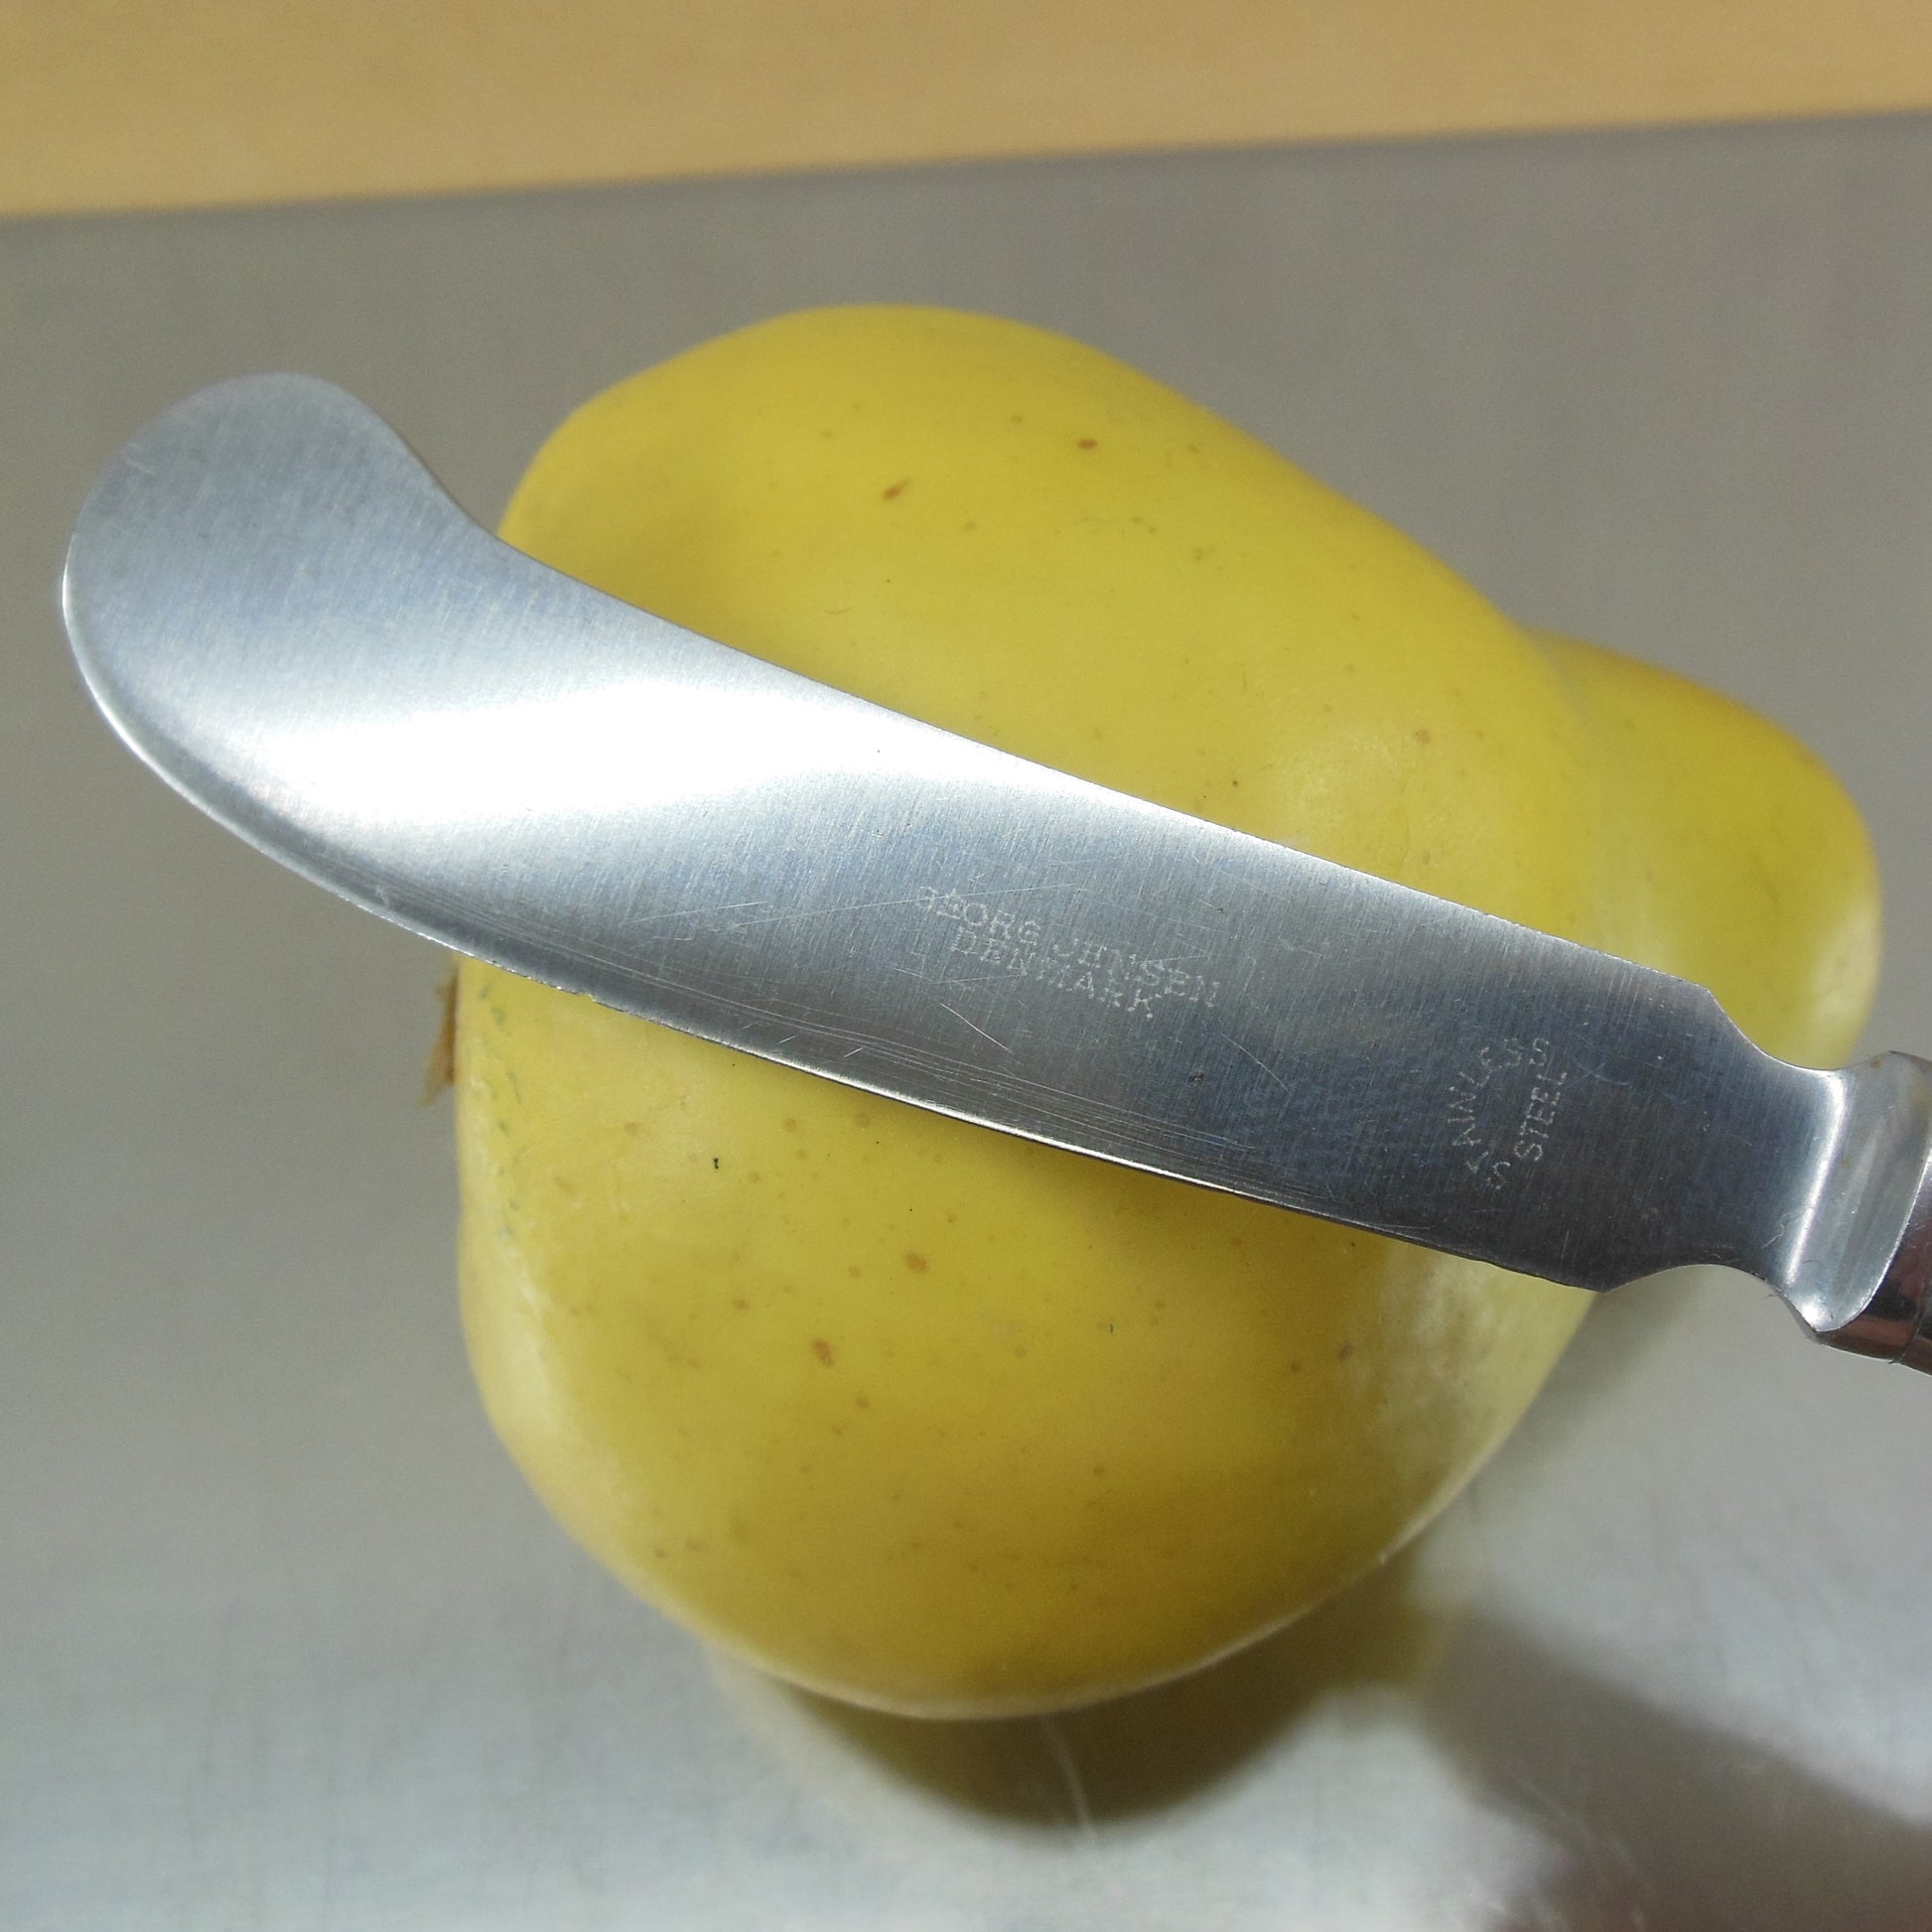 Georg Jensen Denmark Mitra Stainless Butter Spreader Knife used